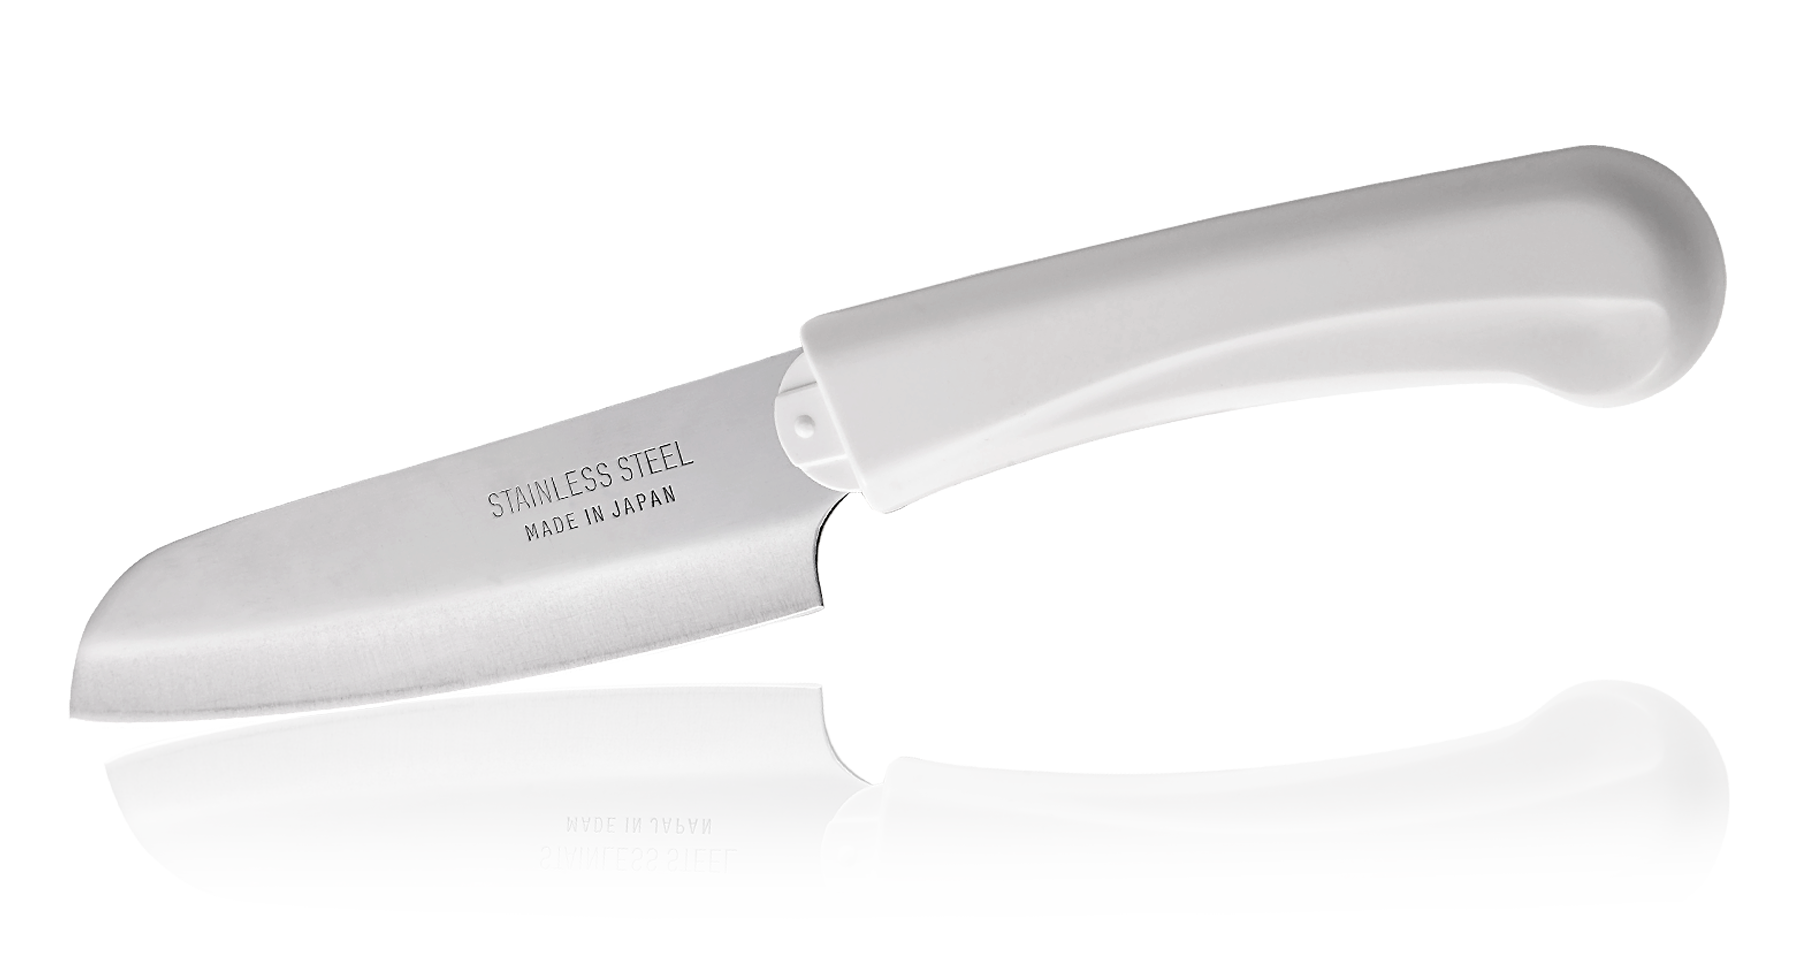 Кухонный нож овощной, Special Series, Fuji Cutlery, FК-432, сталь Sus420J2, белый от Ножиков